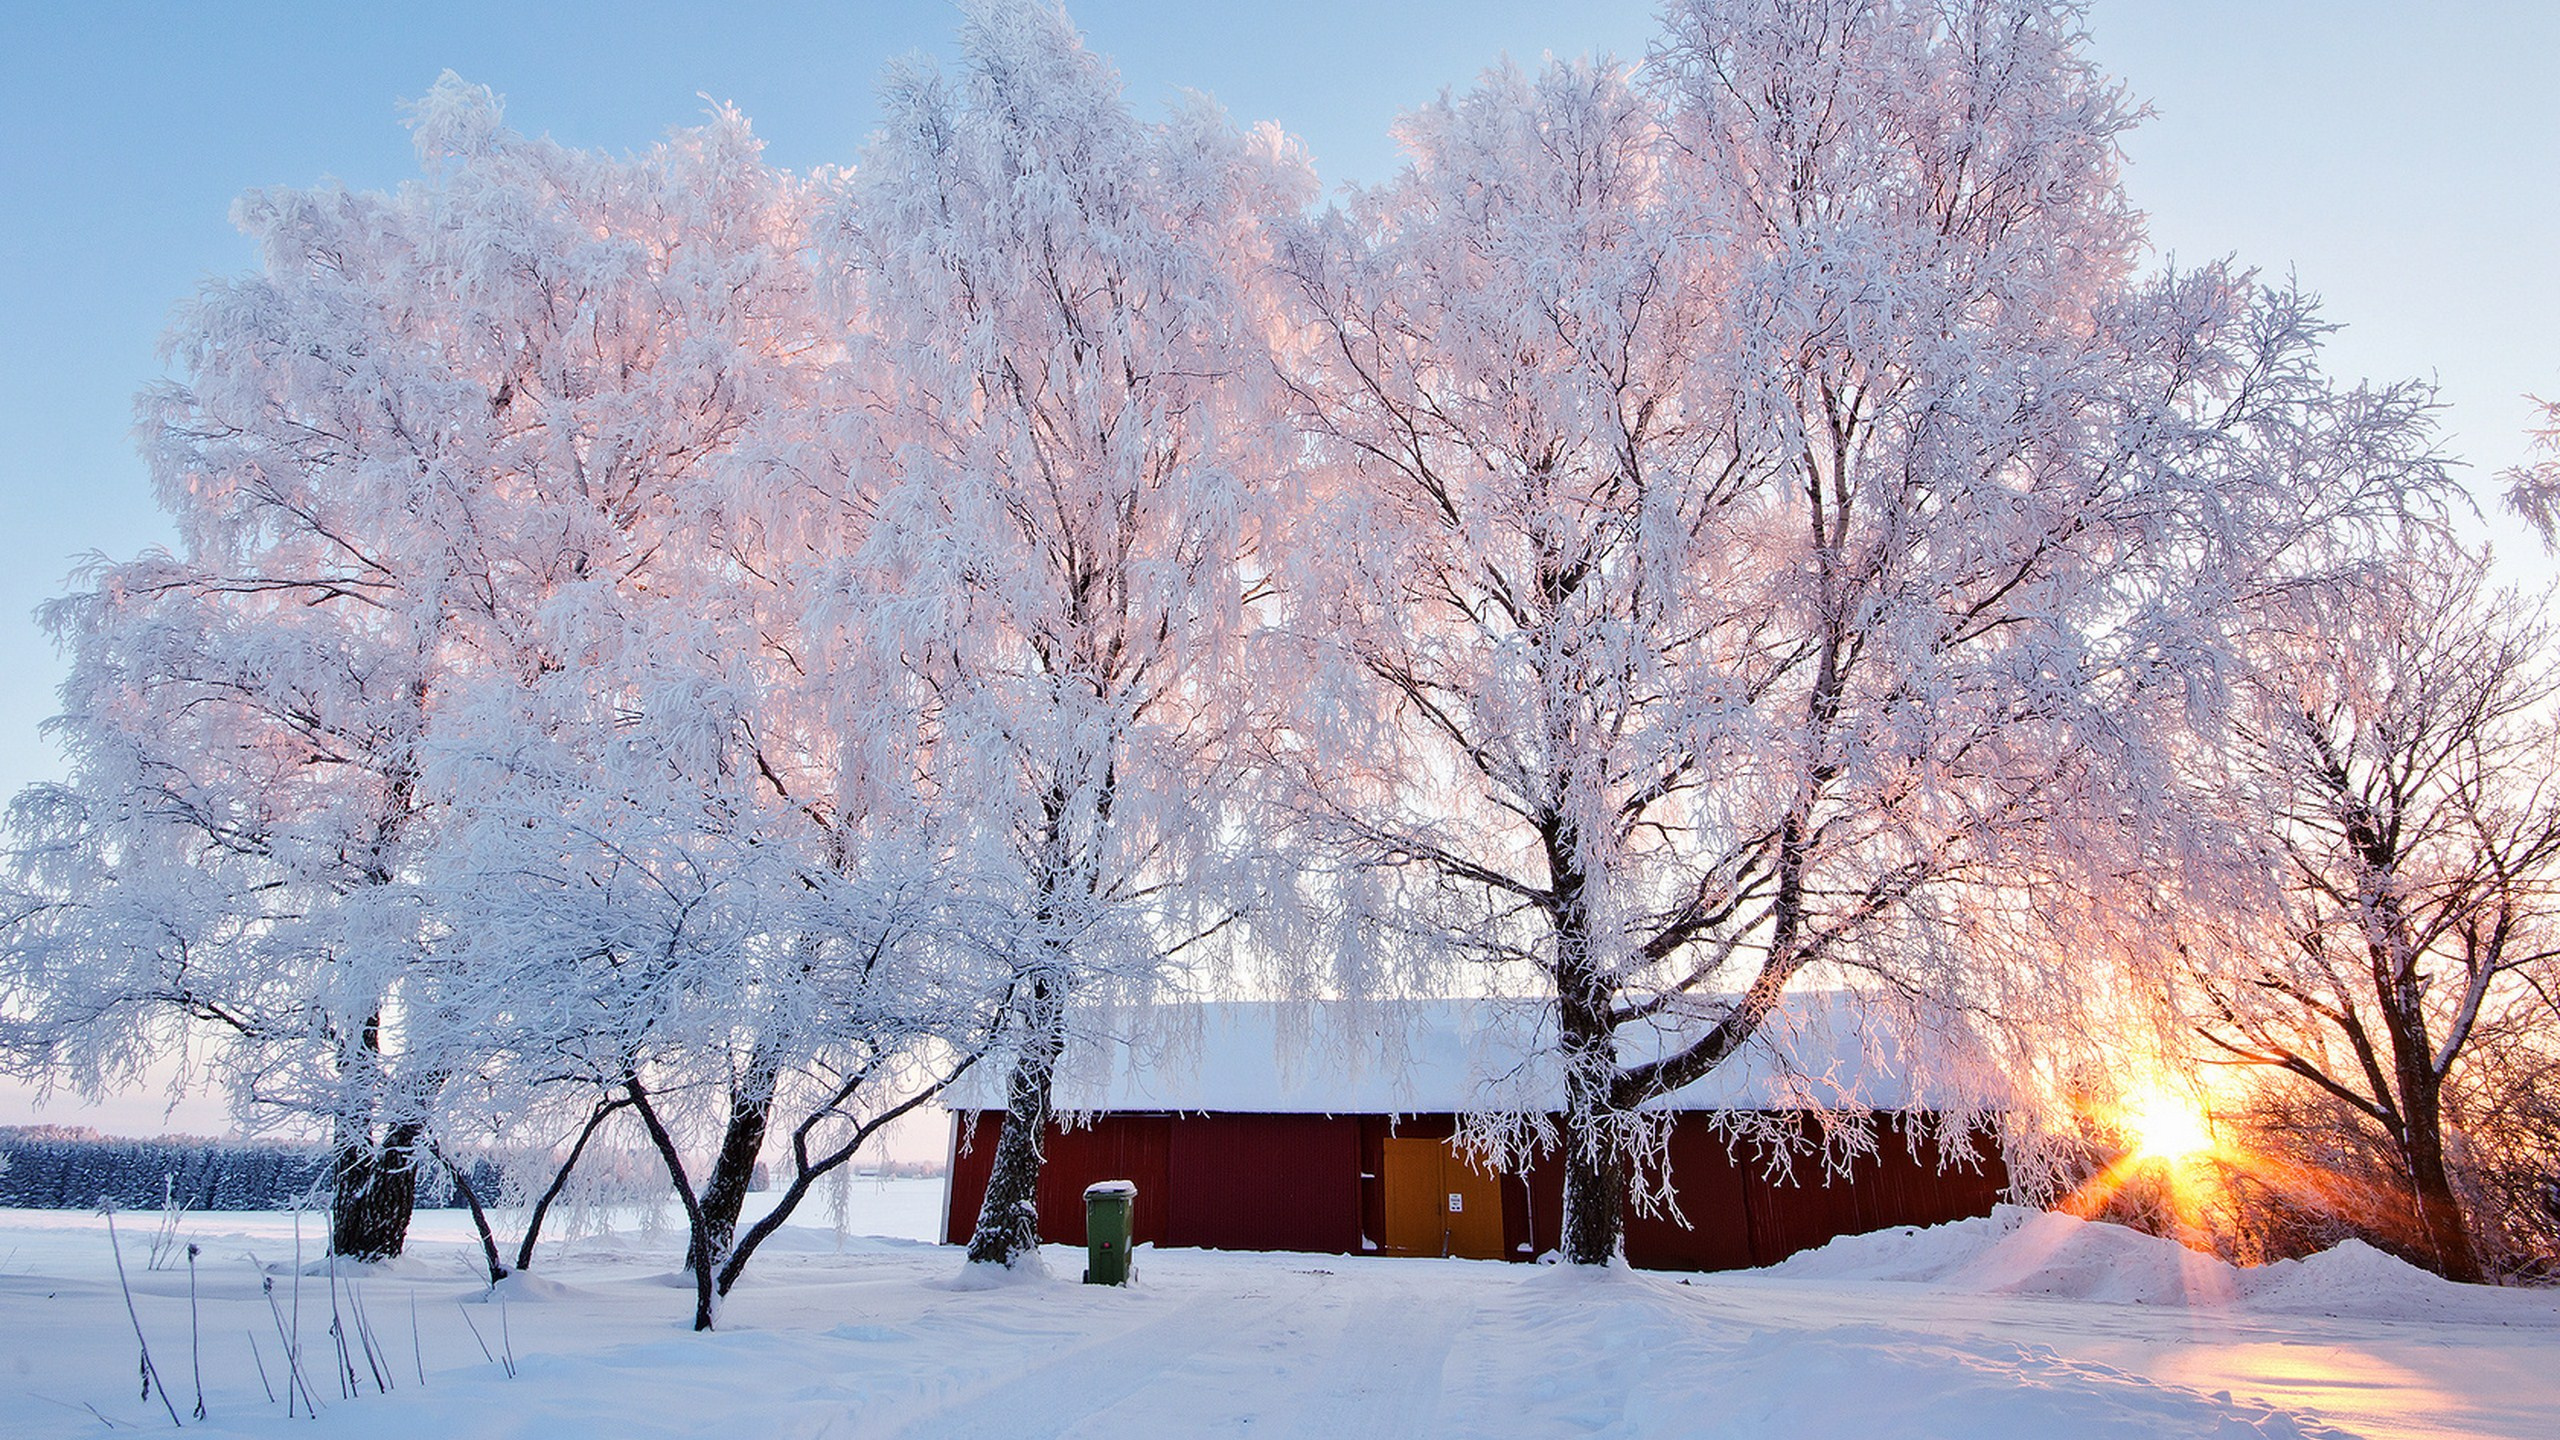 Braunes Holzhaus in Der Nähe Von Bäumen, Die Tagsüber Mit Schnee Bedeckt Sind. Wallpaper in 2560x1440 Resolution